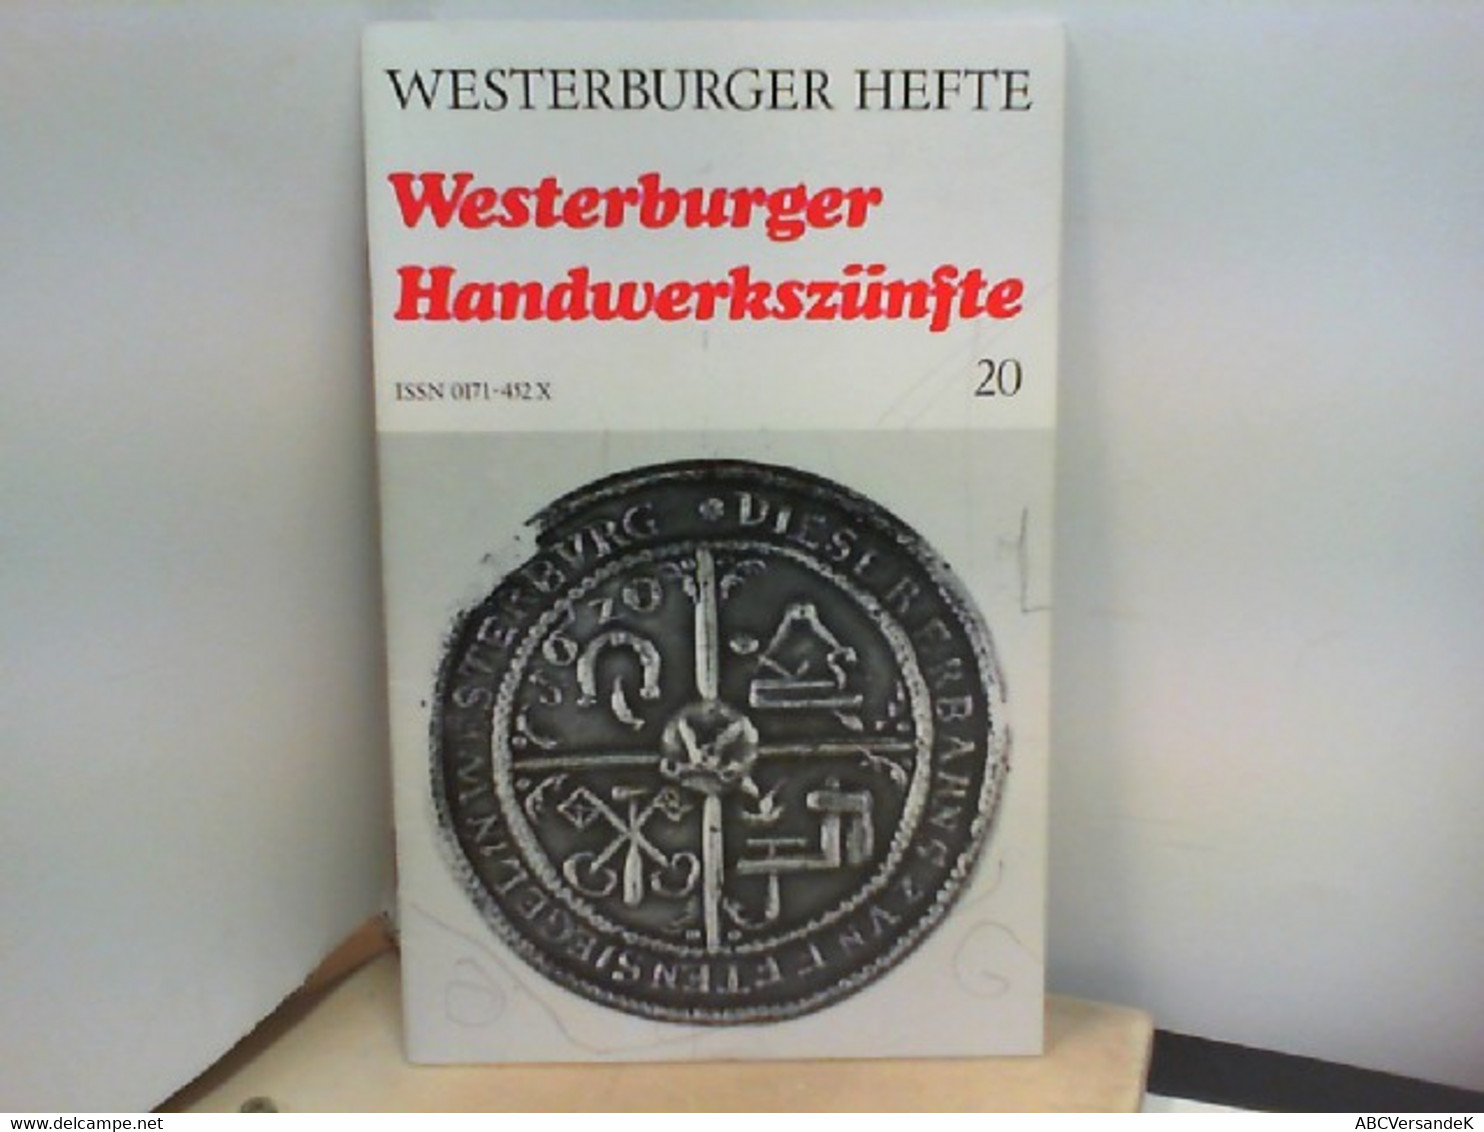 Westerburger Hefte - Heft 20 : Westerburger Handwerkszünfte - Germany (general)